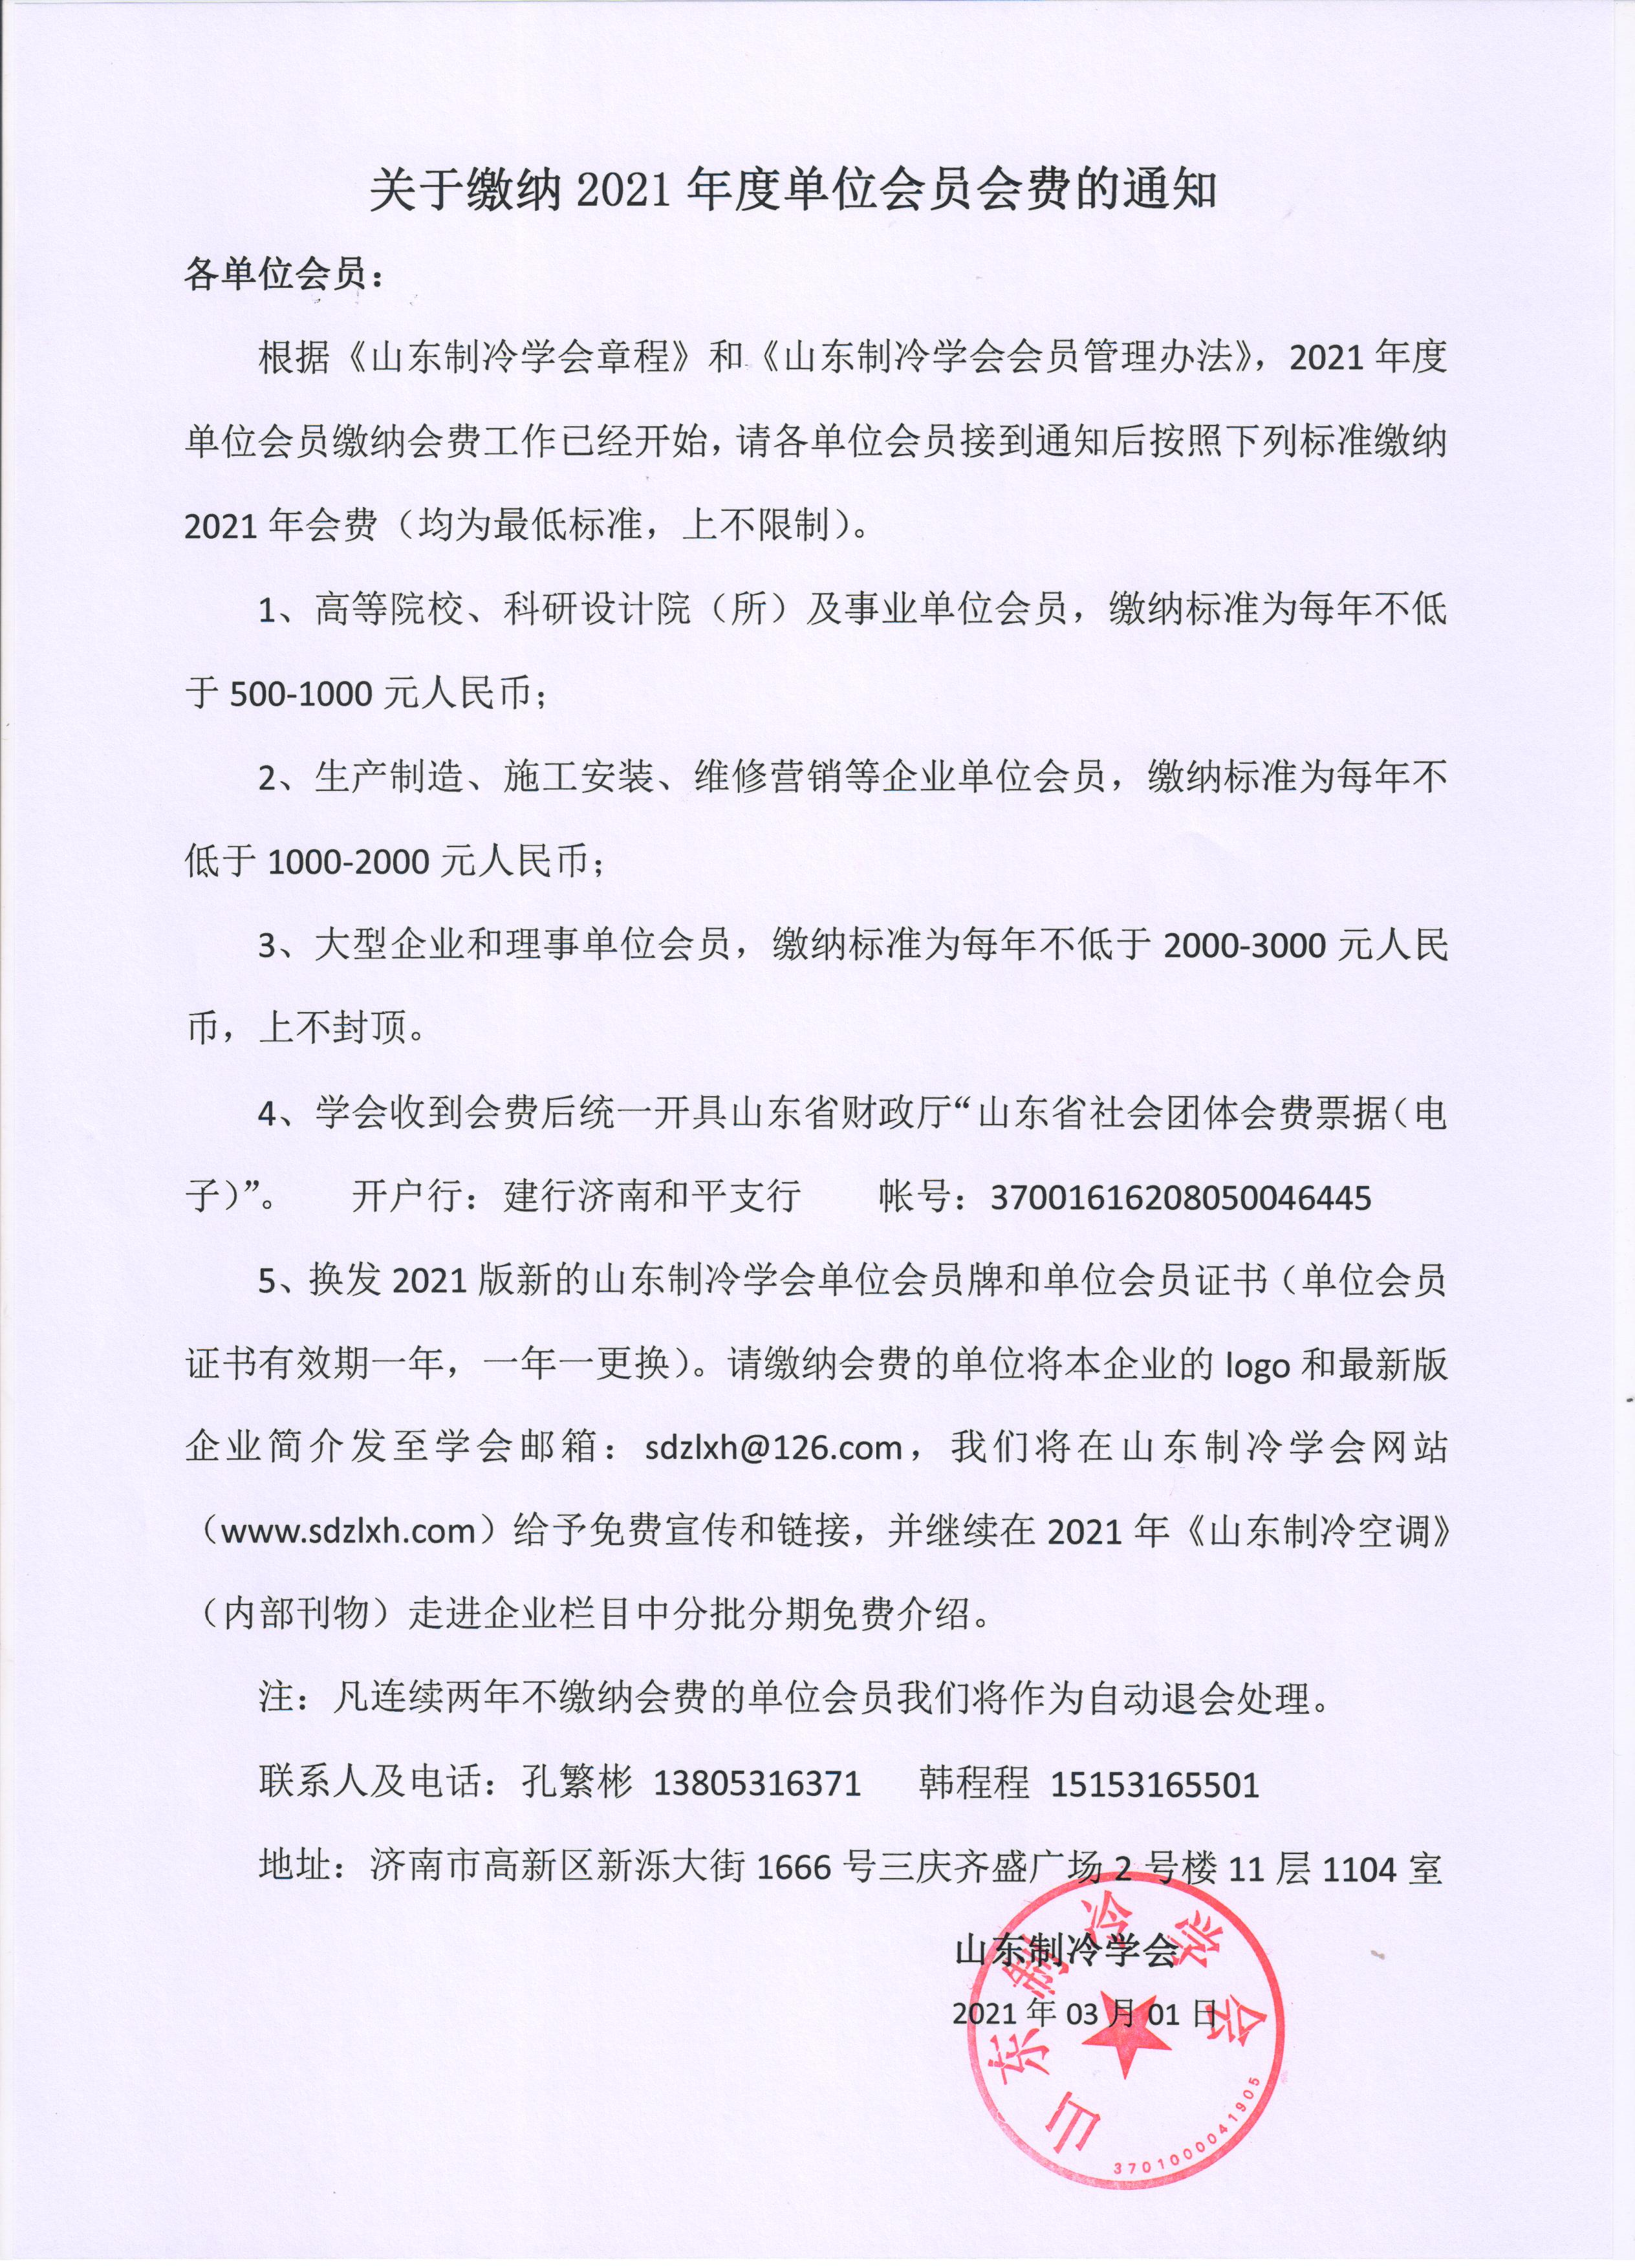 云开体育(China)官方网站缴纳2021年度单位会员会费的通知